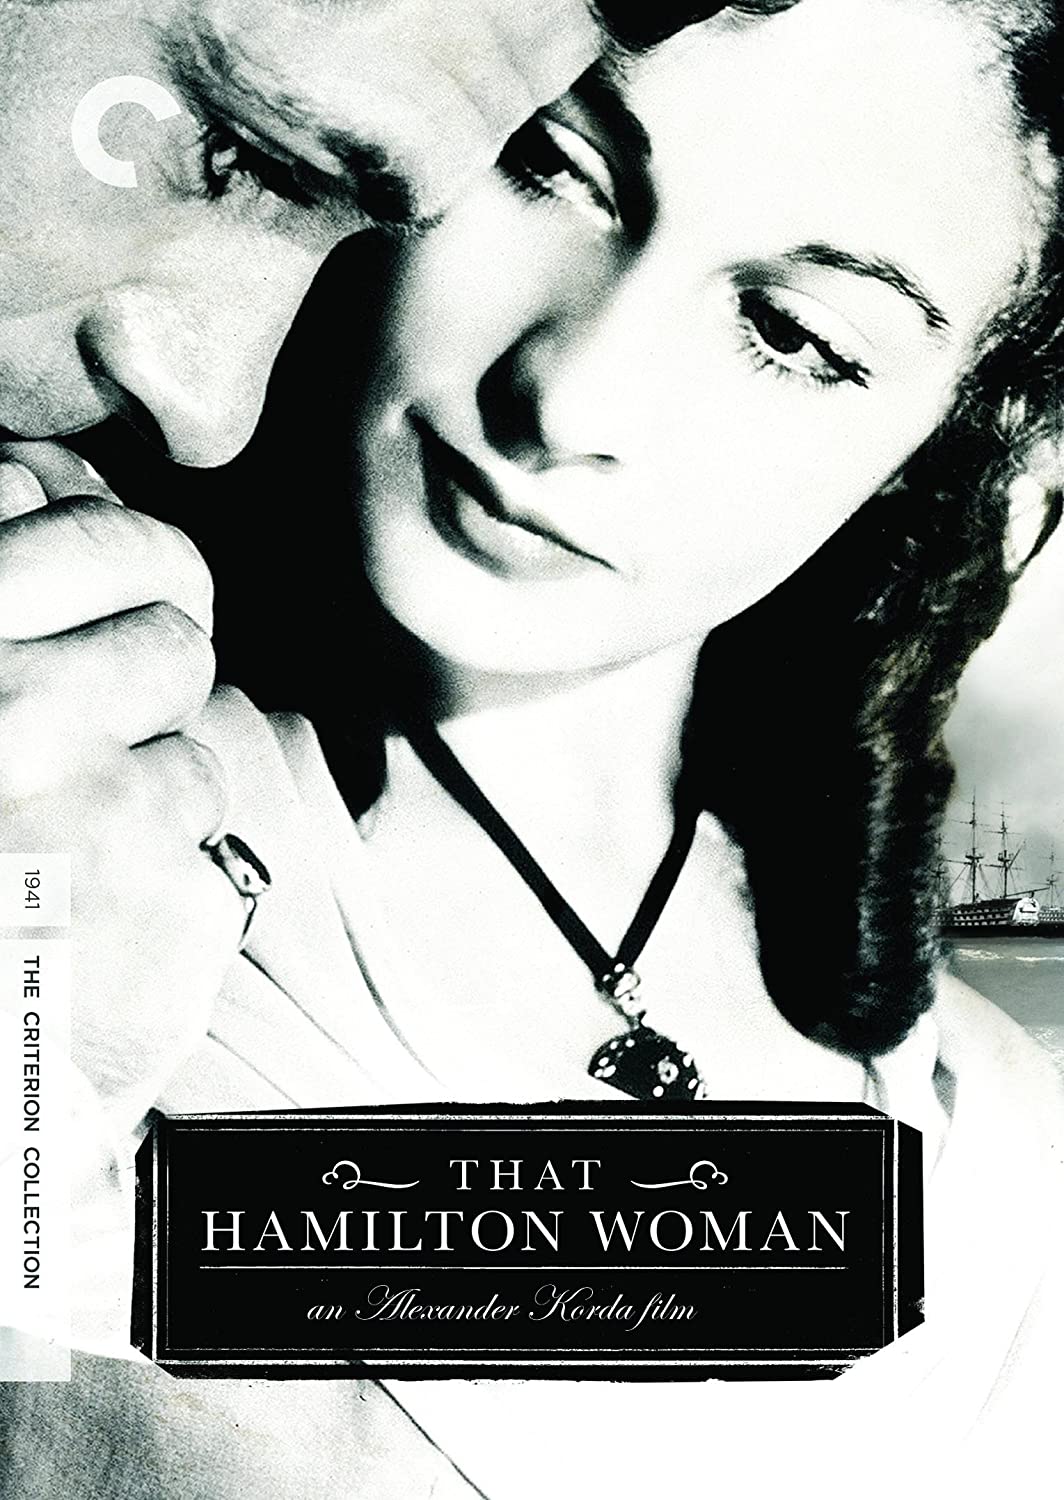 That Hamilton Woman [DVD]